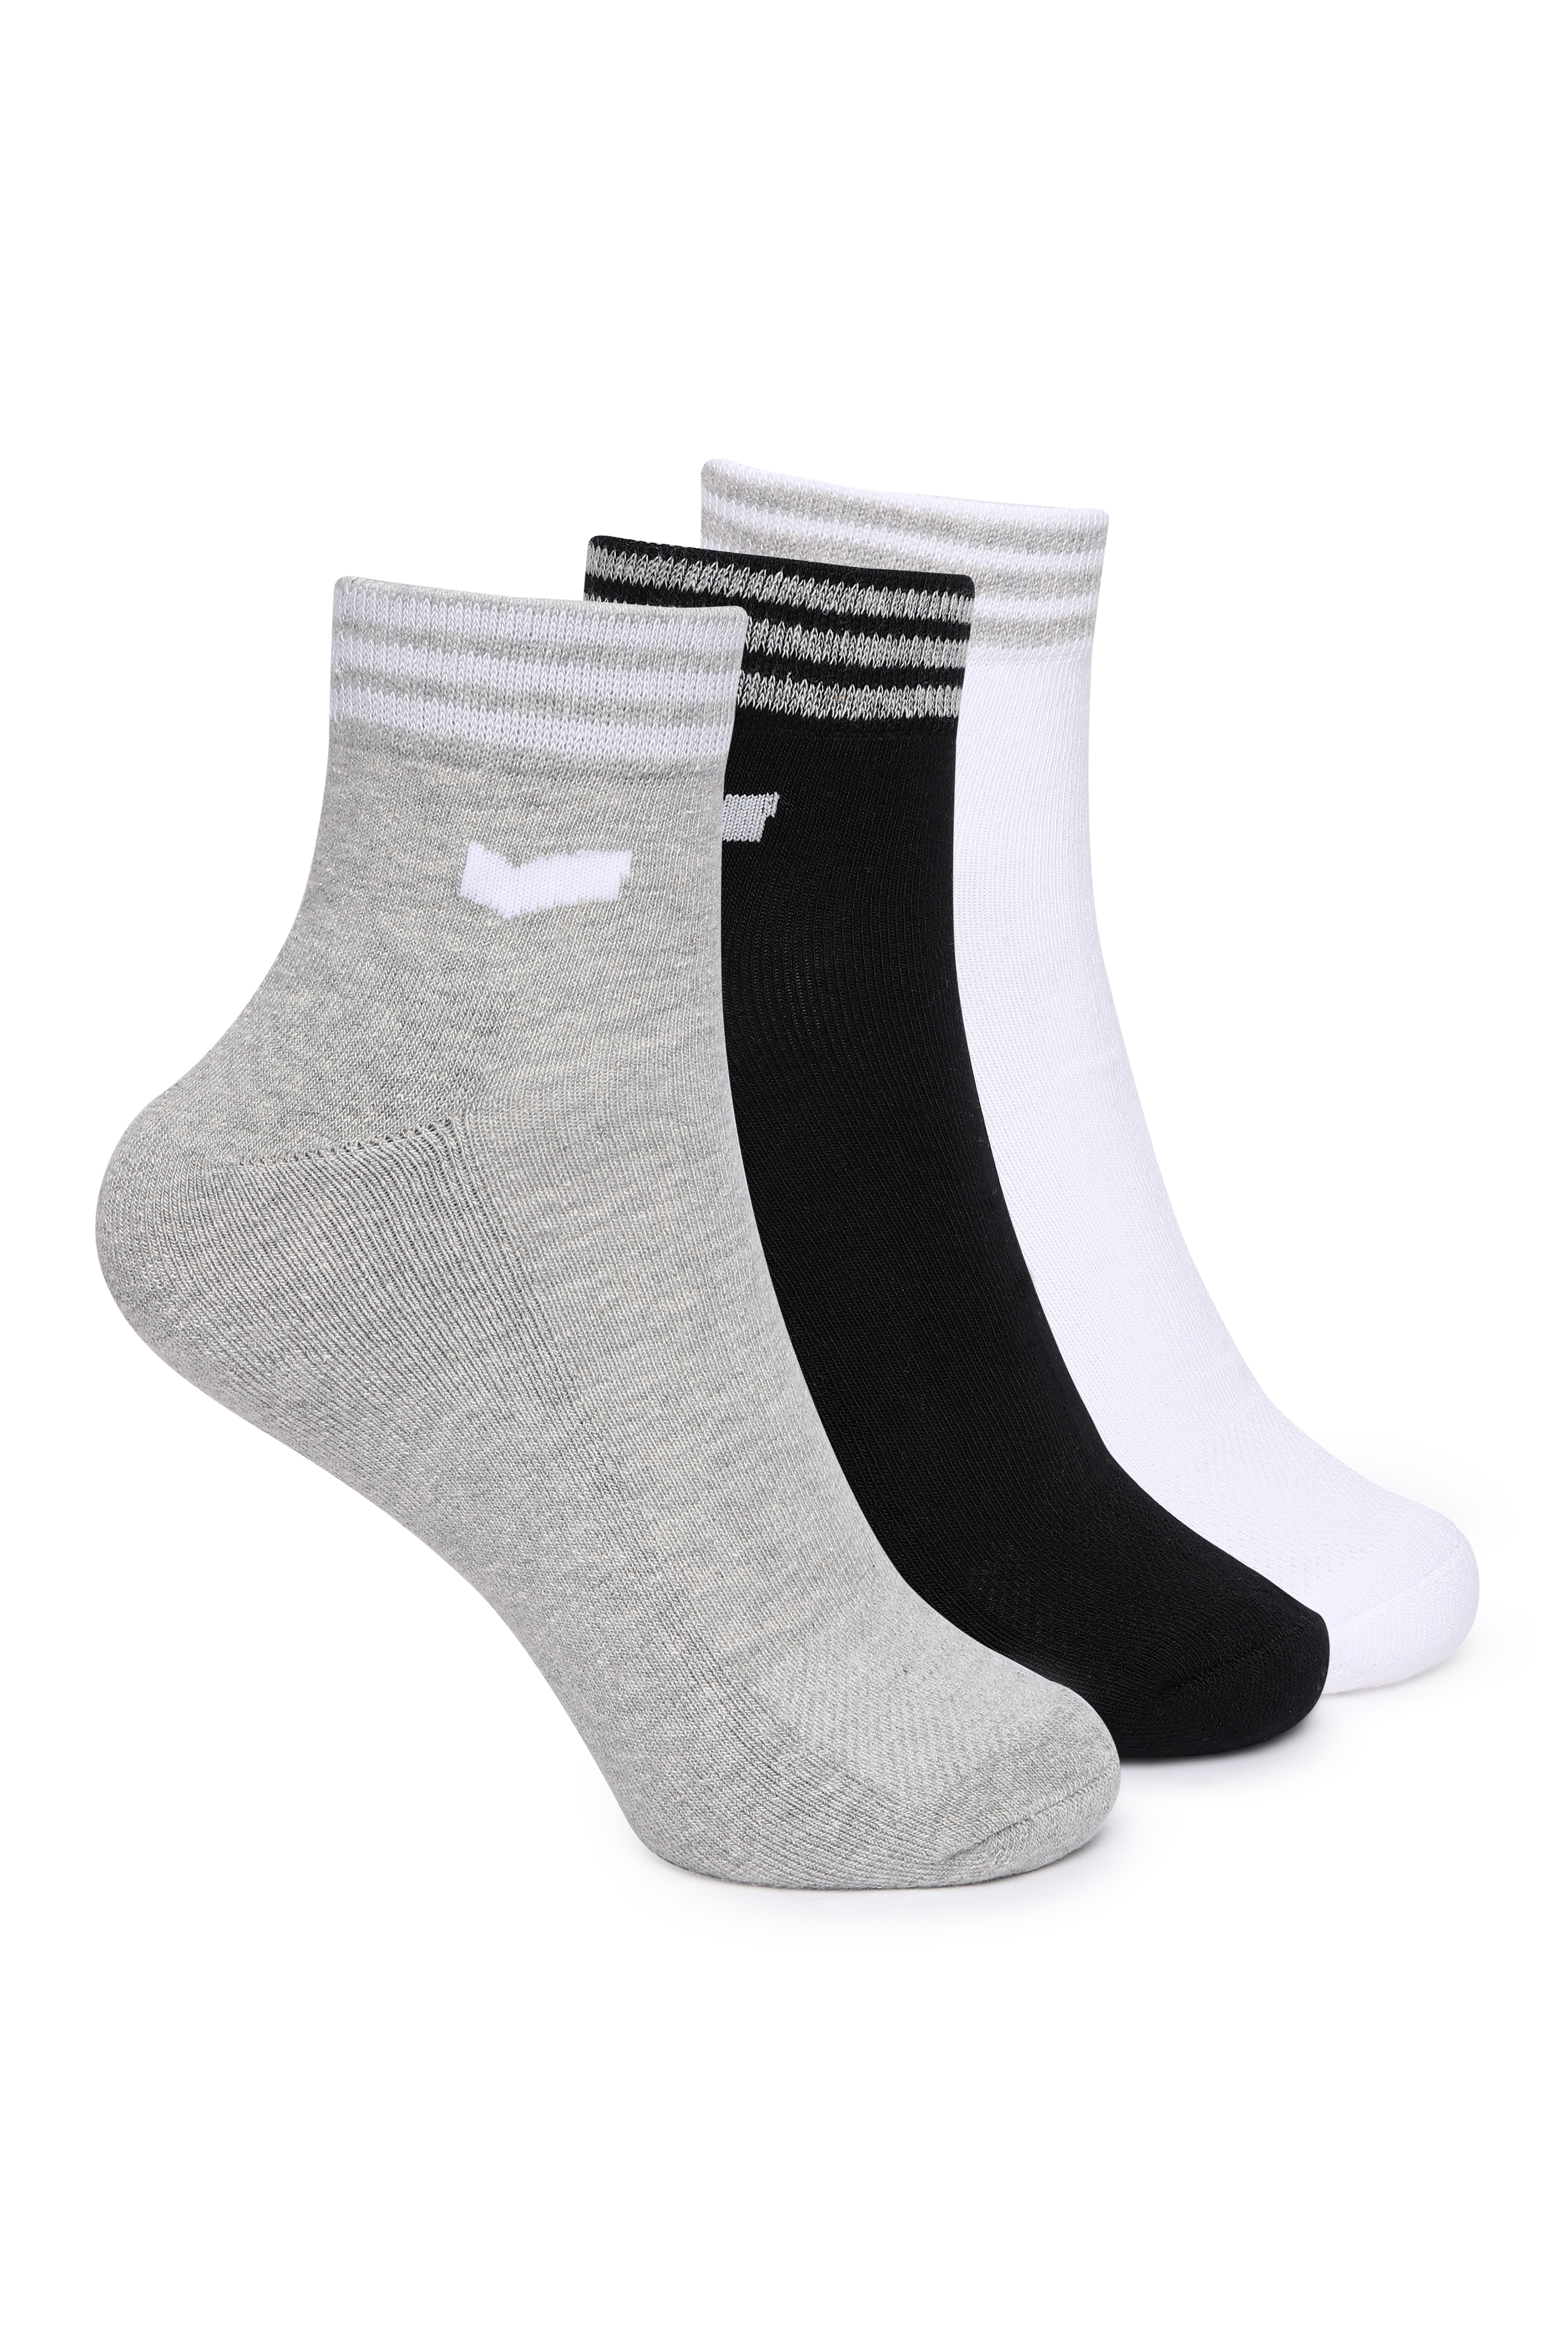 OHAN IN Black/White/Grey Stripe Socks (Pack of 3)